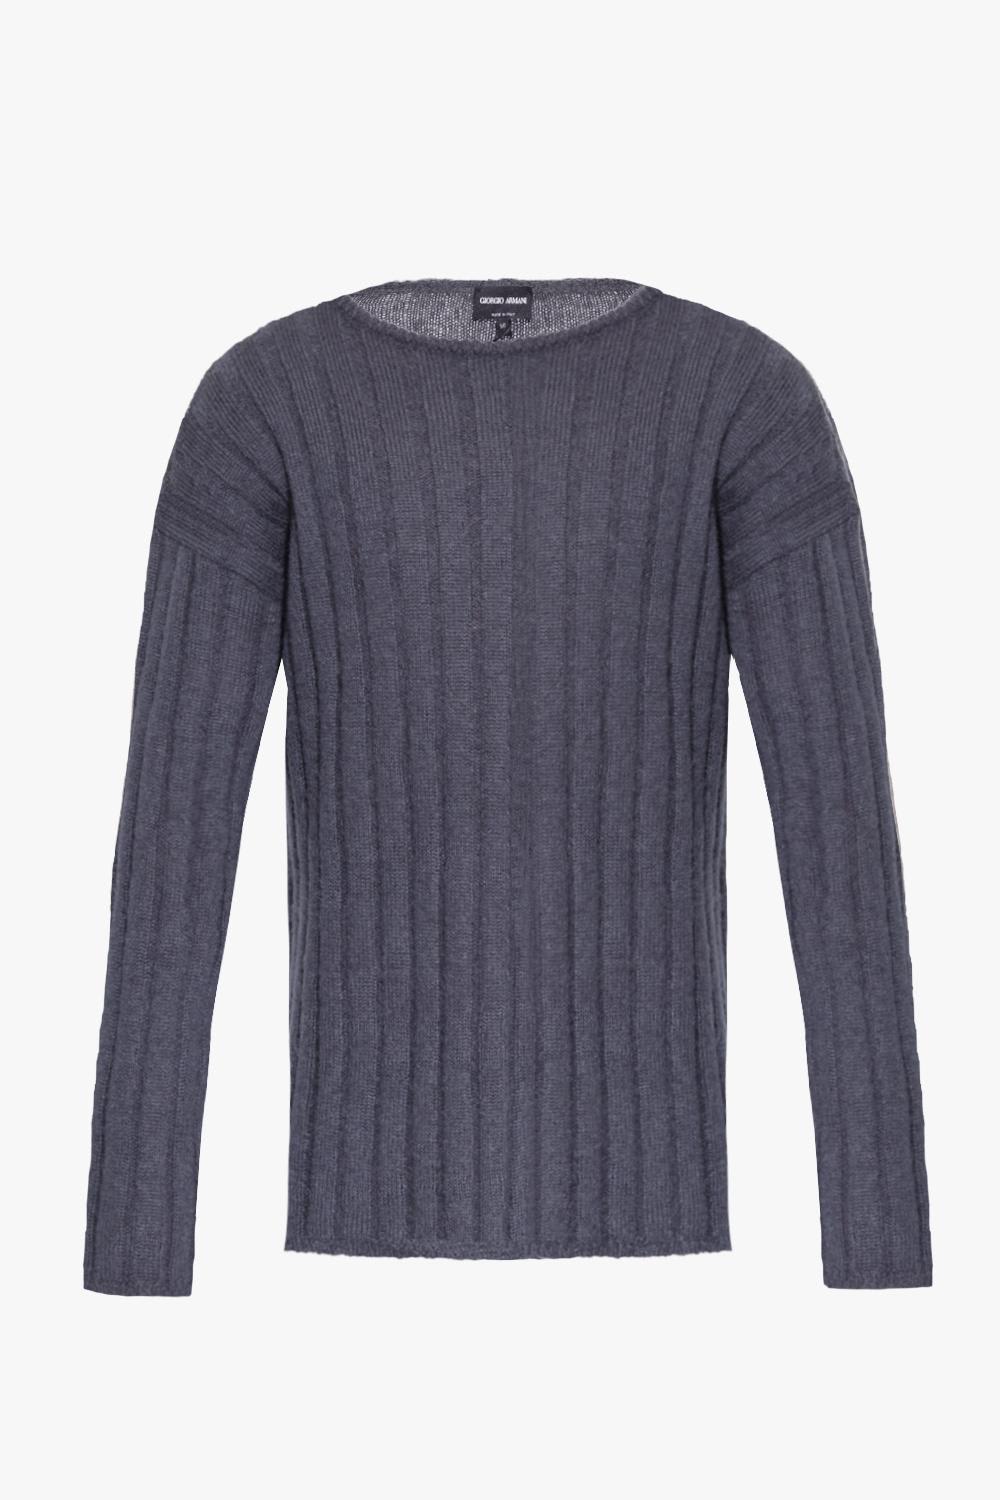 Shop Giorgio Armani Ribbed Sweater